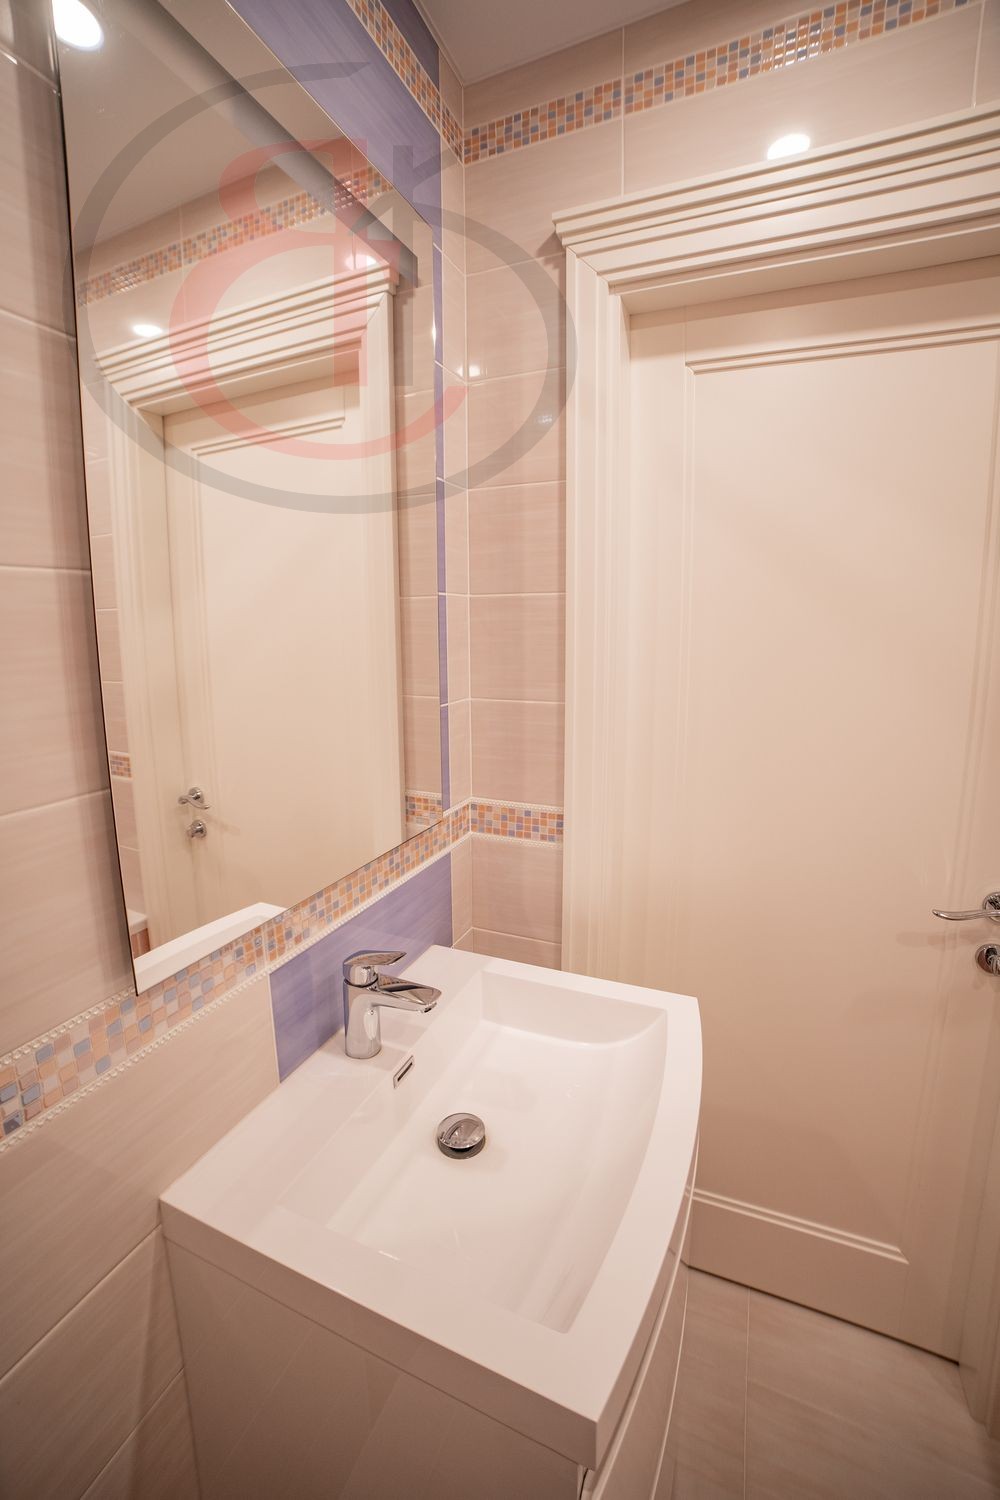 Плитка в ванную комнату, дизайн интерьер небольшой ванной комнаты, плитка для ванной комнаты, - обзор ремонта (2)